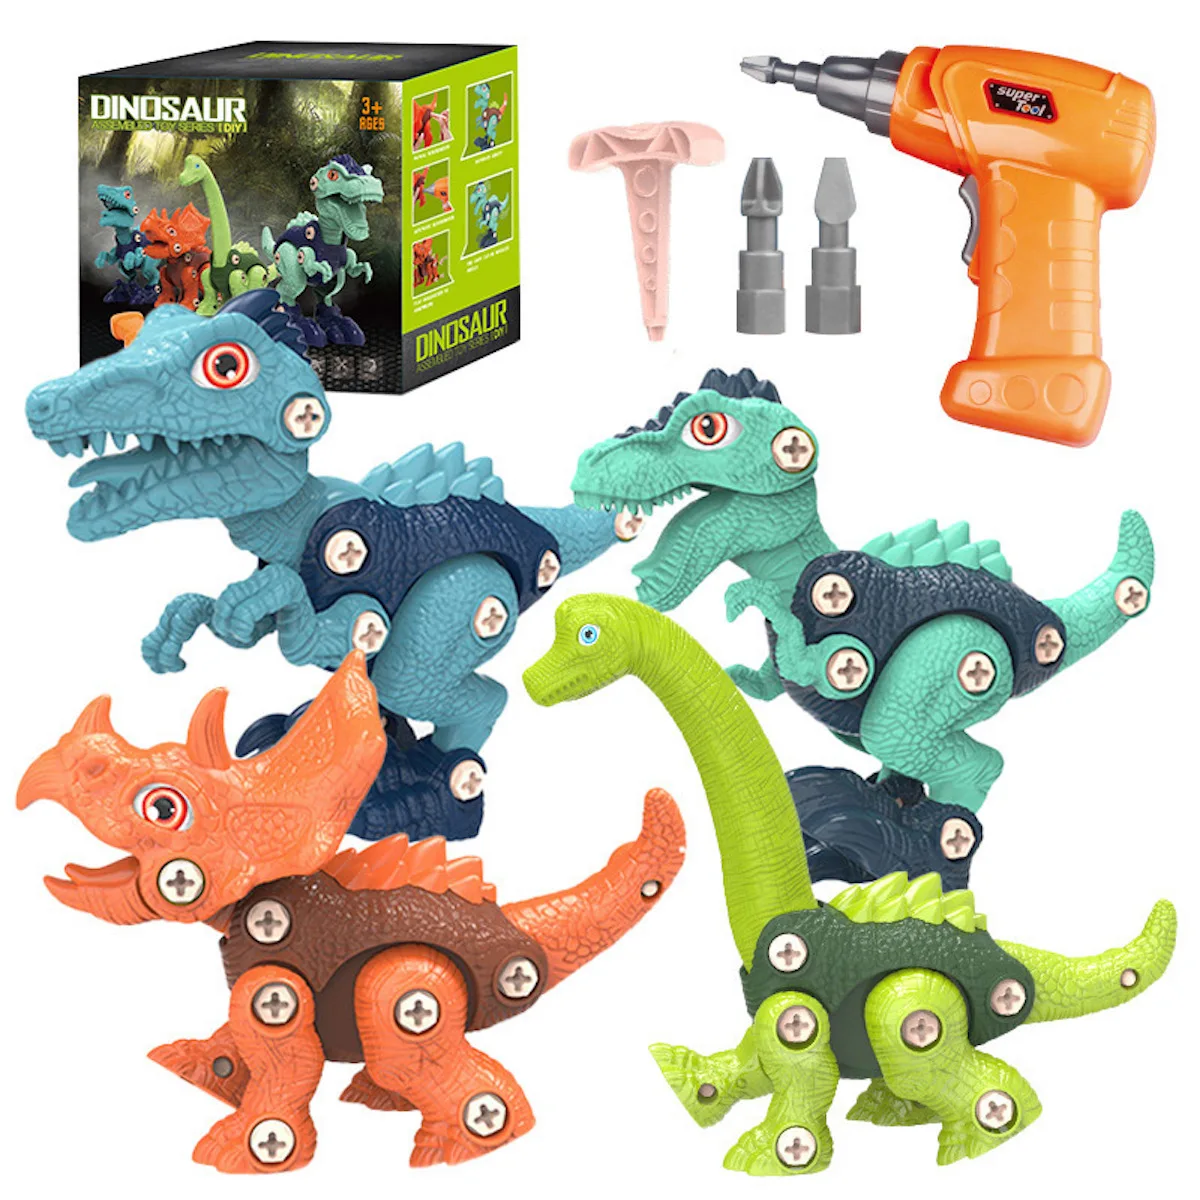 Игрушки-Динозавры разборные игрушки динозавры для детей строительный стержень детские игрушки с электрической дрелью игрушки динозавры Р...